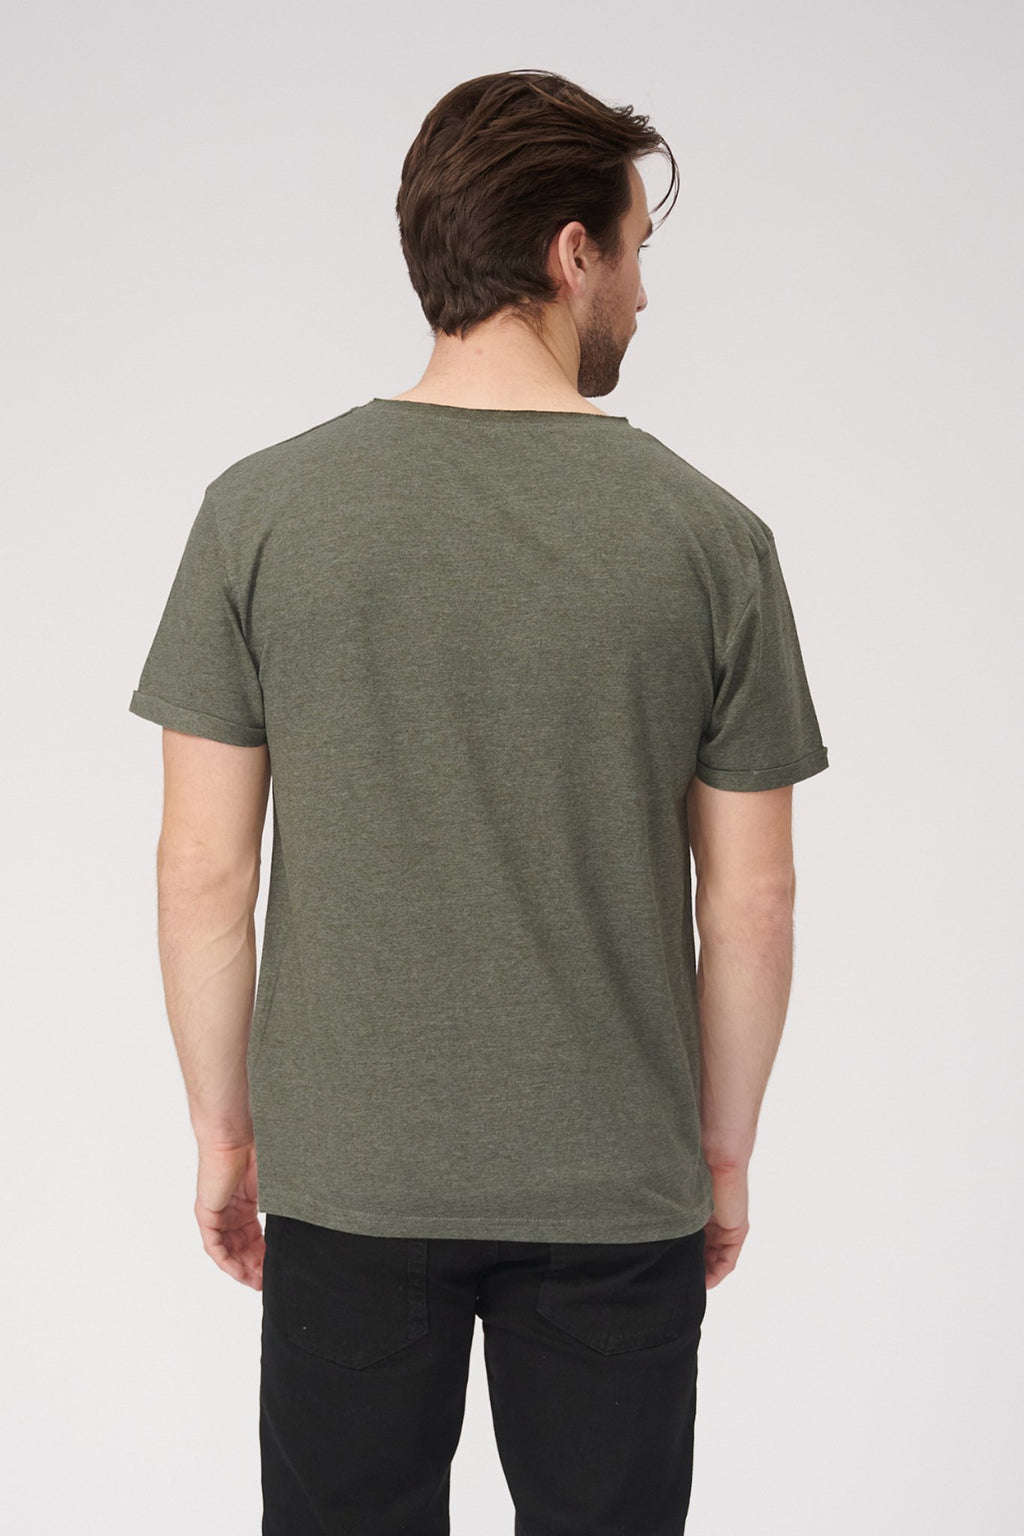 Rohhals -T -Shirt - fackelt grün